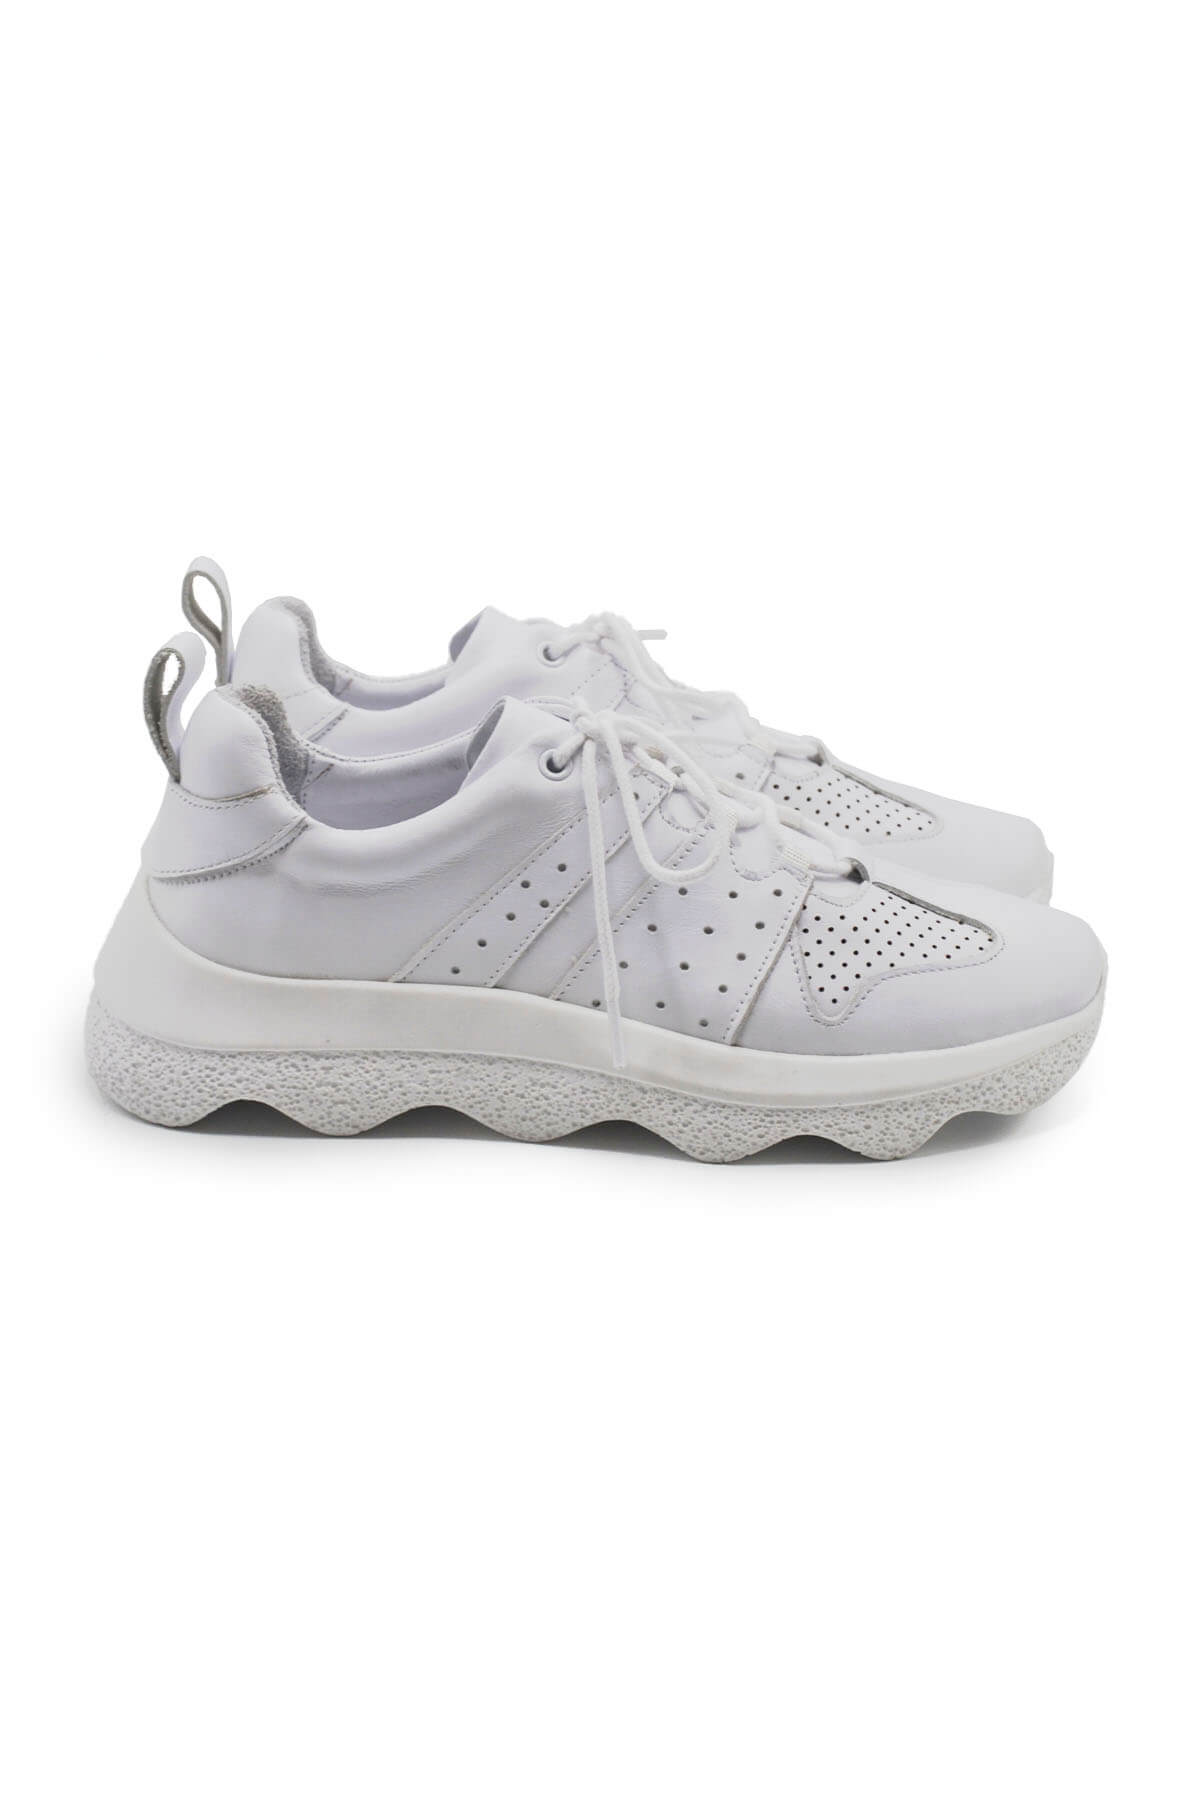 Kadın Deri Sneakers Ayakkabı Beyaz 2314001Y - Thumbnail